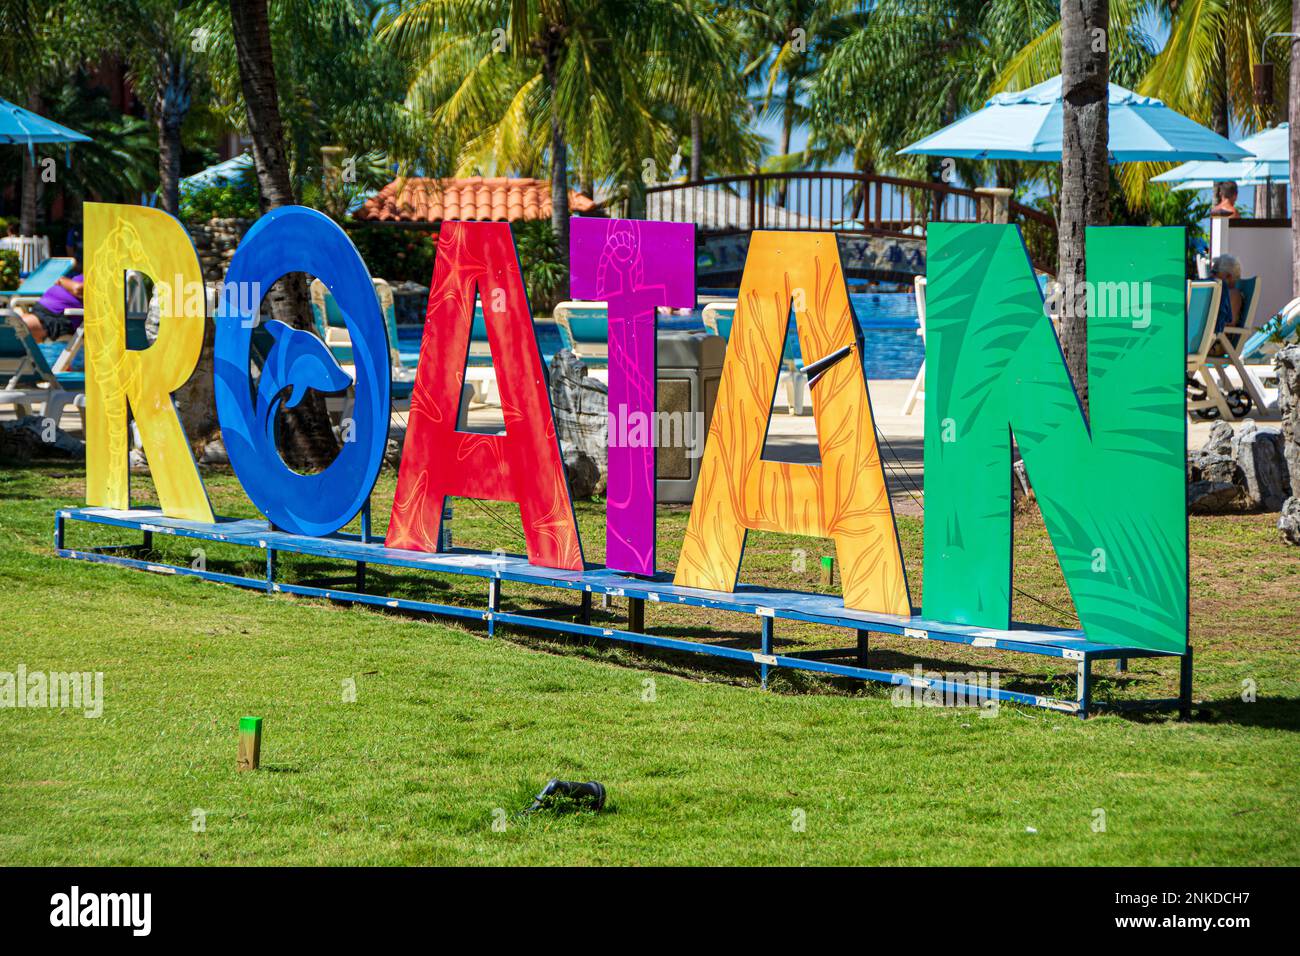 A sign announcing the arrival to Roatan, Roatan, Honduras. Stock Photo